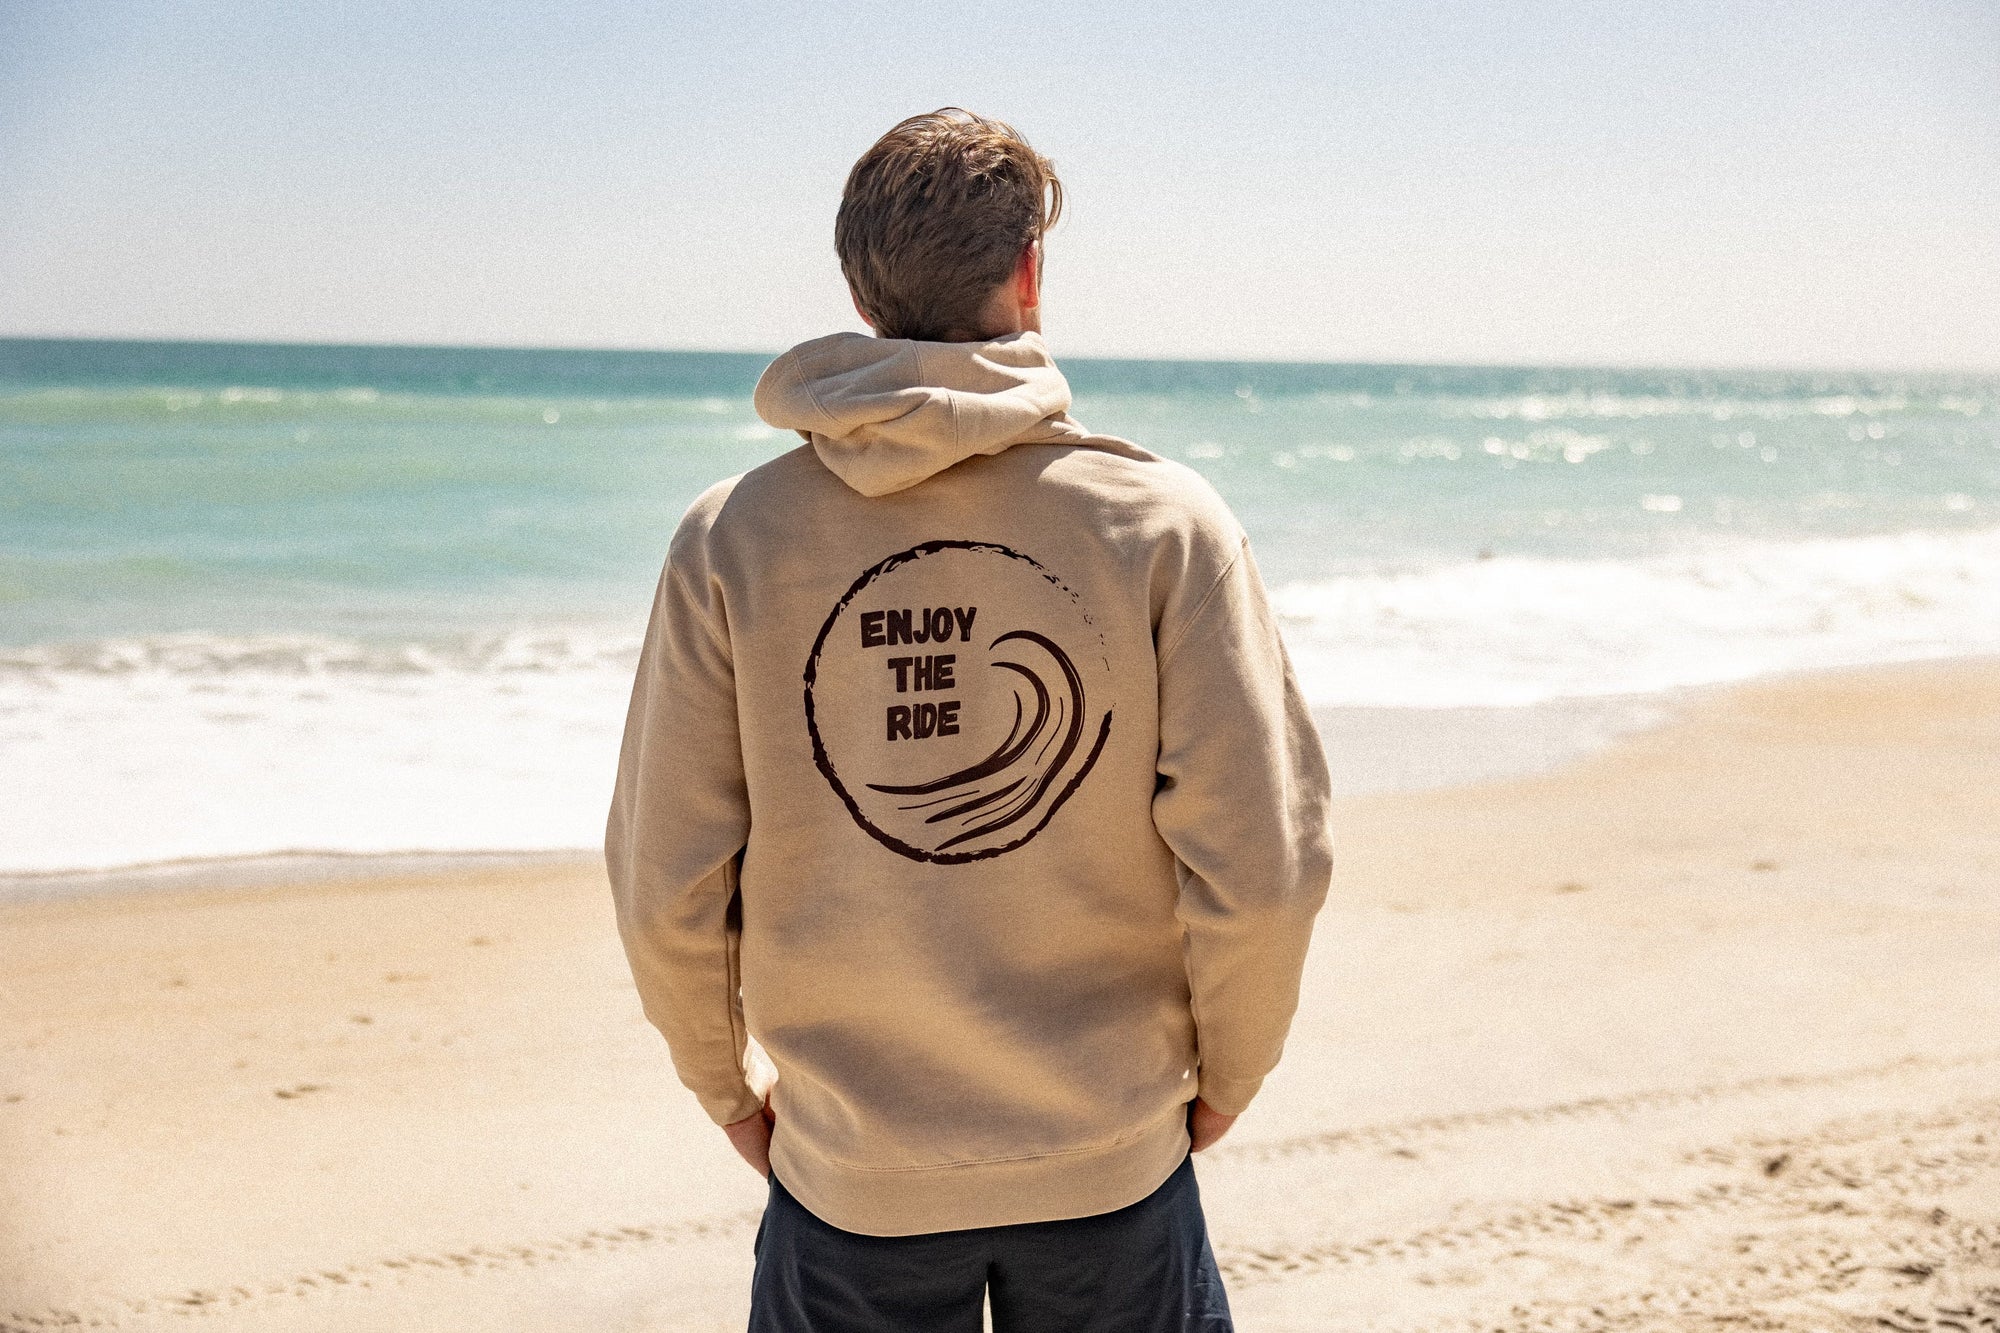 Beach Lifestyle Clothing - Shirts, Sweatshirts | Frond Clothing Co